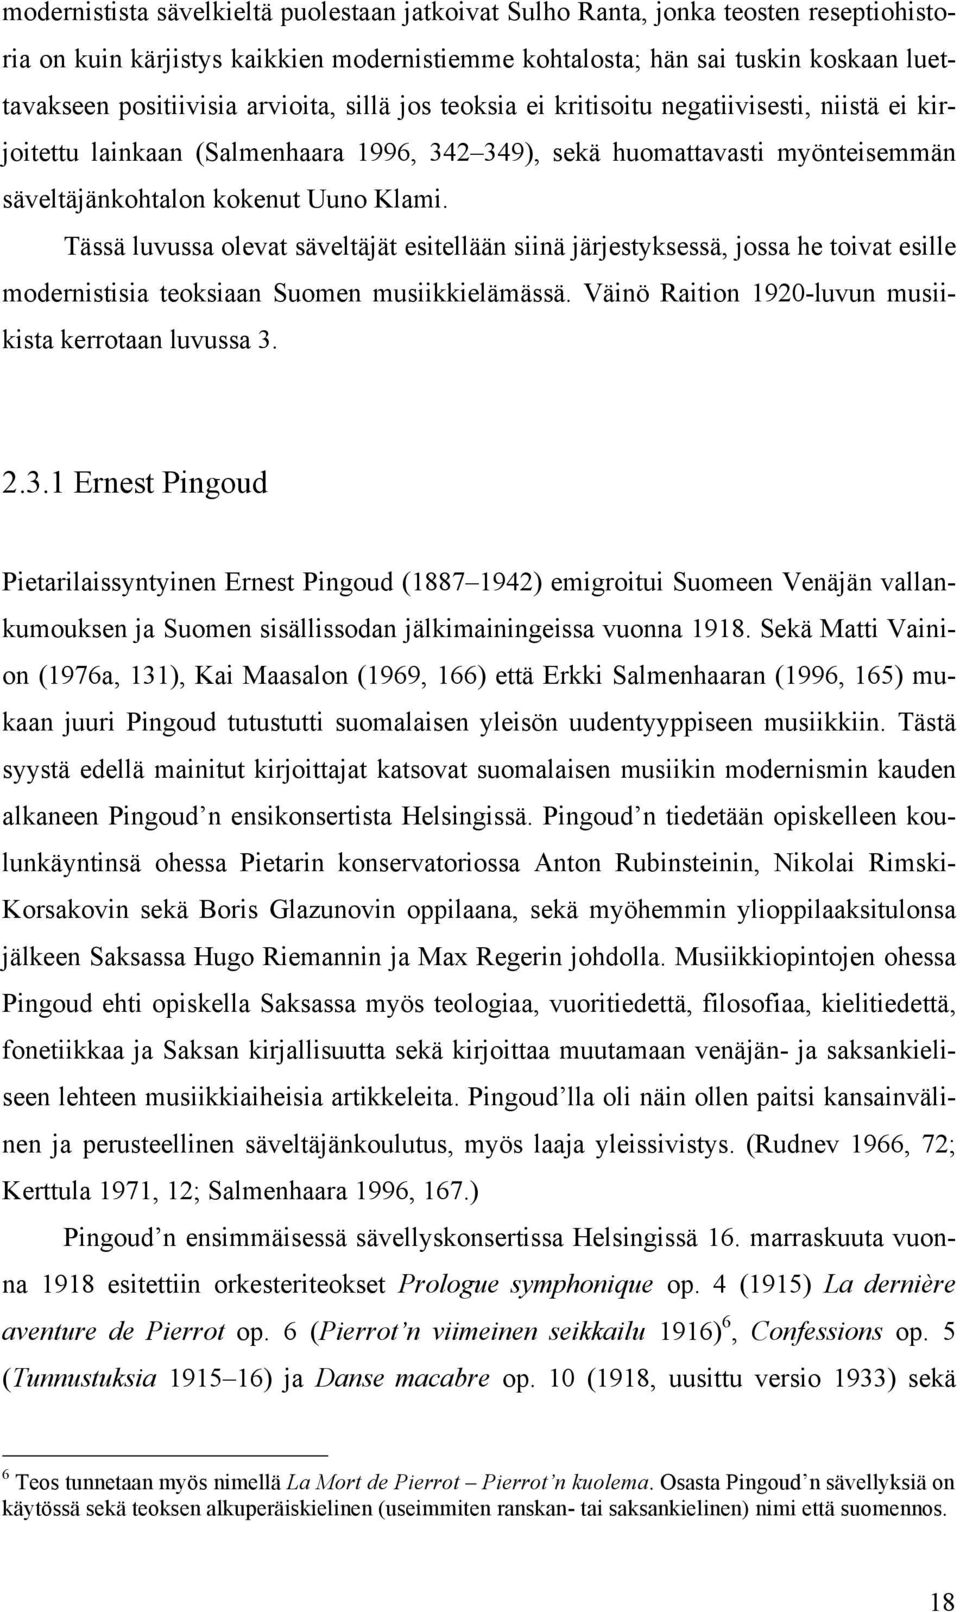 Tässä luvussa olevat säveltäjät esitellään siinä järjestyksessä, jossa he toivat esille modernistisia teoksiaan Suomen musiikkielämässä. Väinö Raition 1920-luvun musiikista kerrotaan luvussa 3.